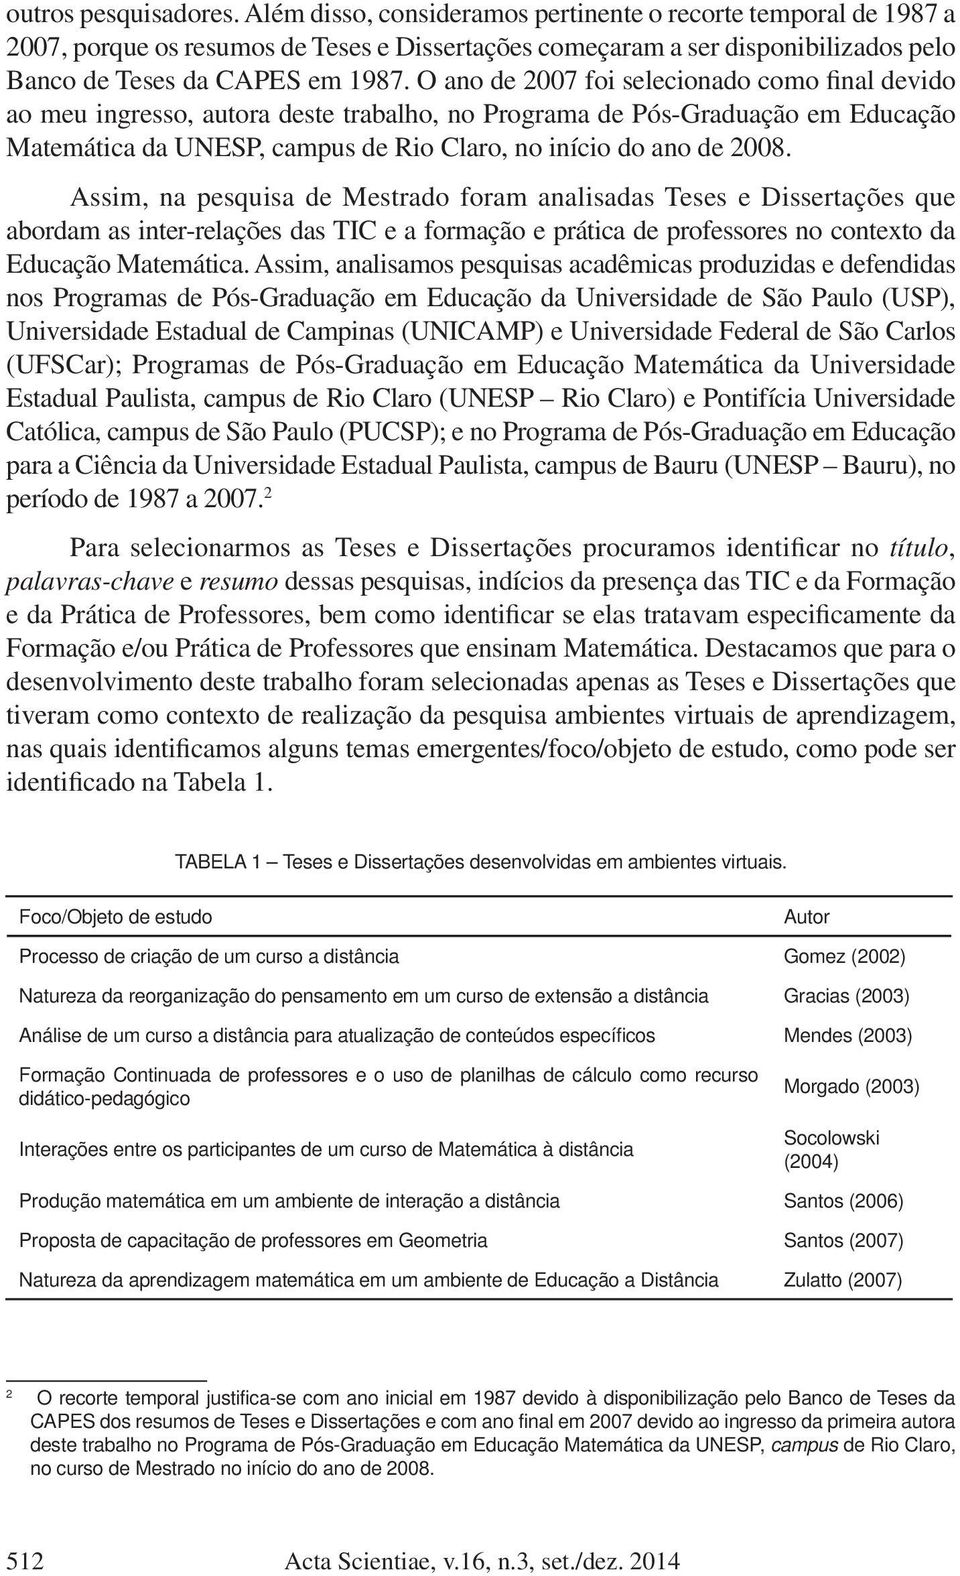 O ano de 2007 foi selecionado como final devido ao meu ingresso, autora deste trabalho, no Programa de Pós-Graduação em Educação Matemática da UNESP, campus de Rio Claro, no início do ano de 2008.